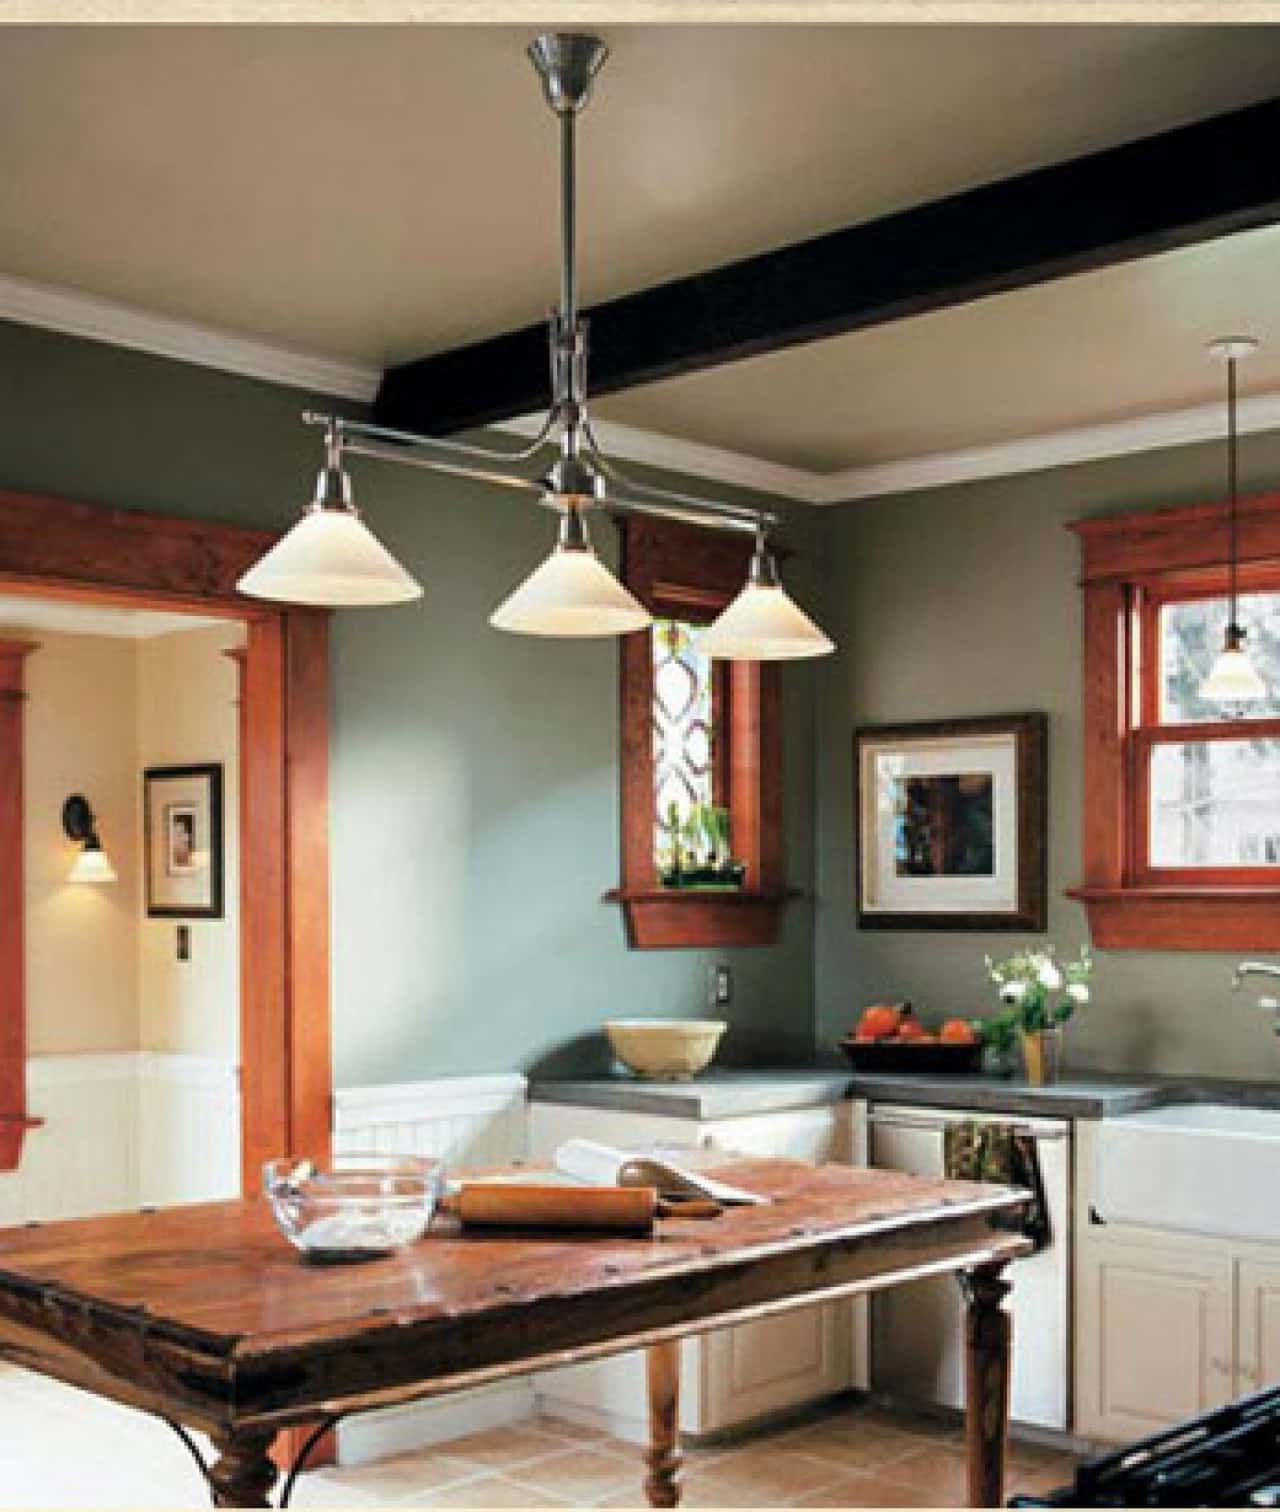  kitchen overhead lighting